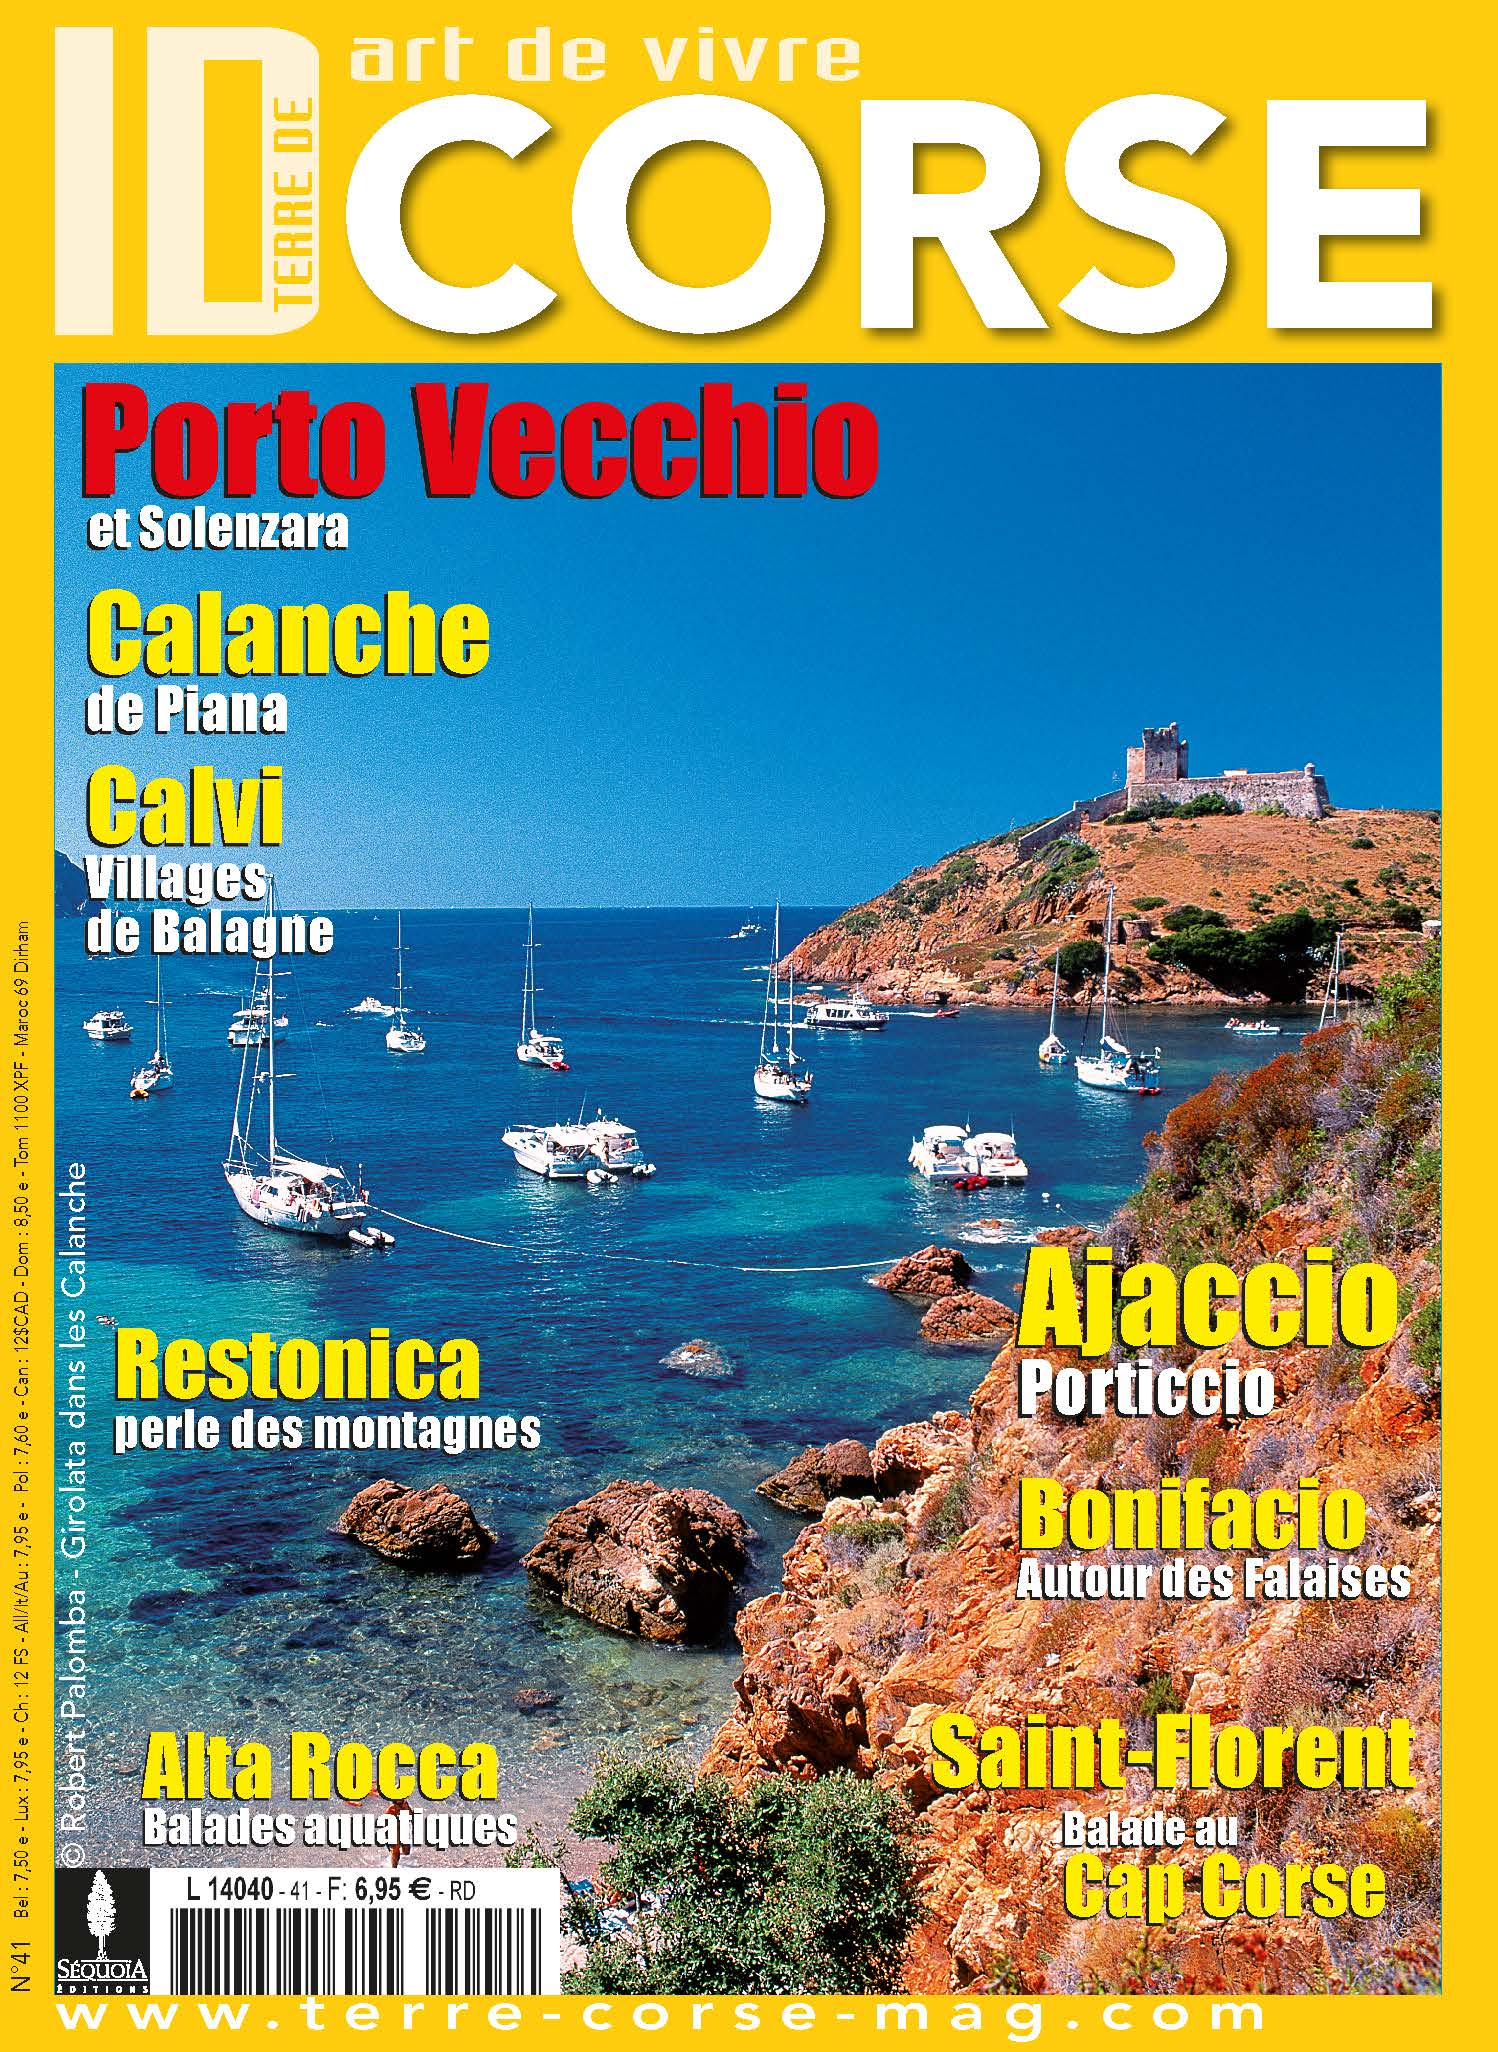 Couv Terre de Corse (1).jpg